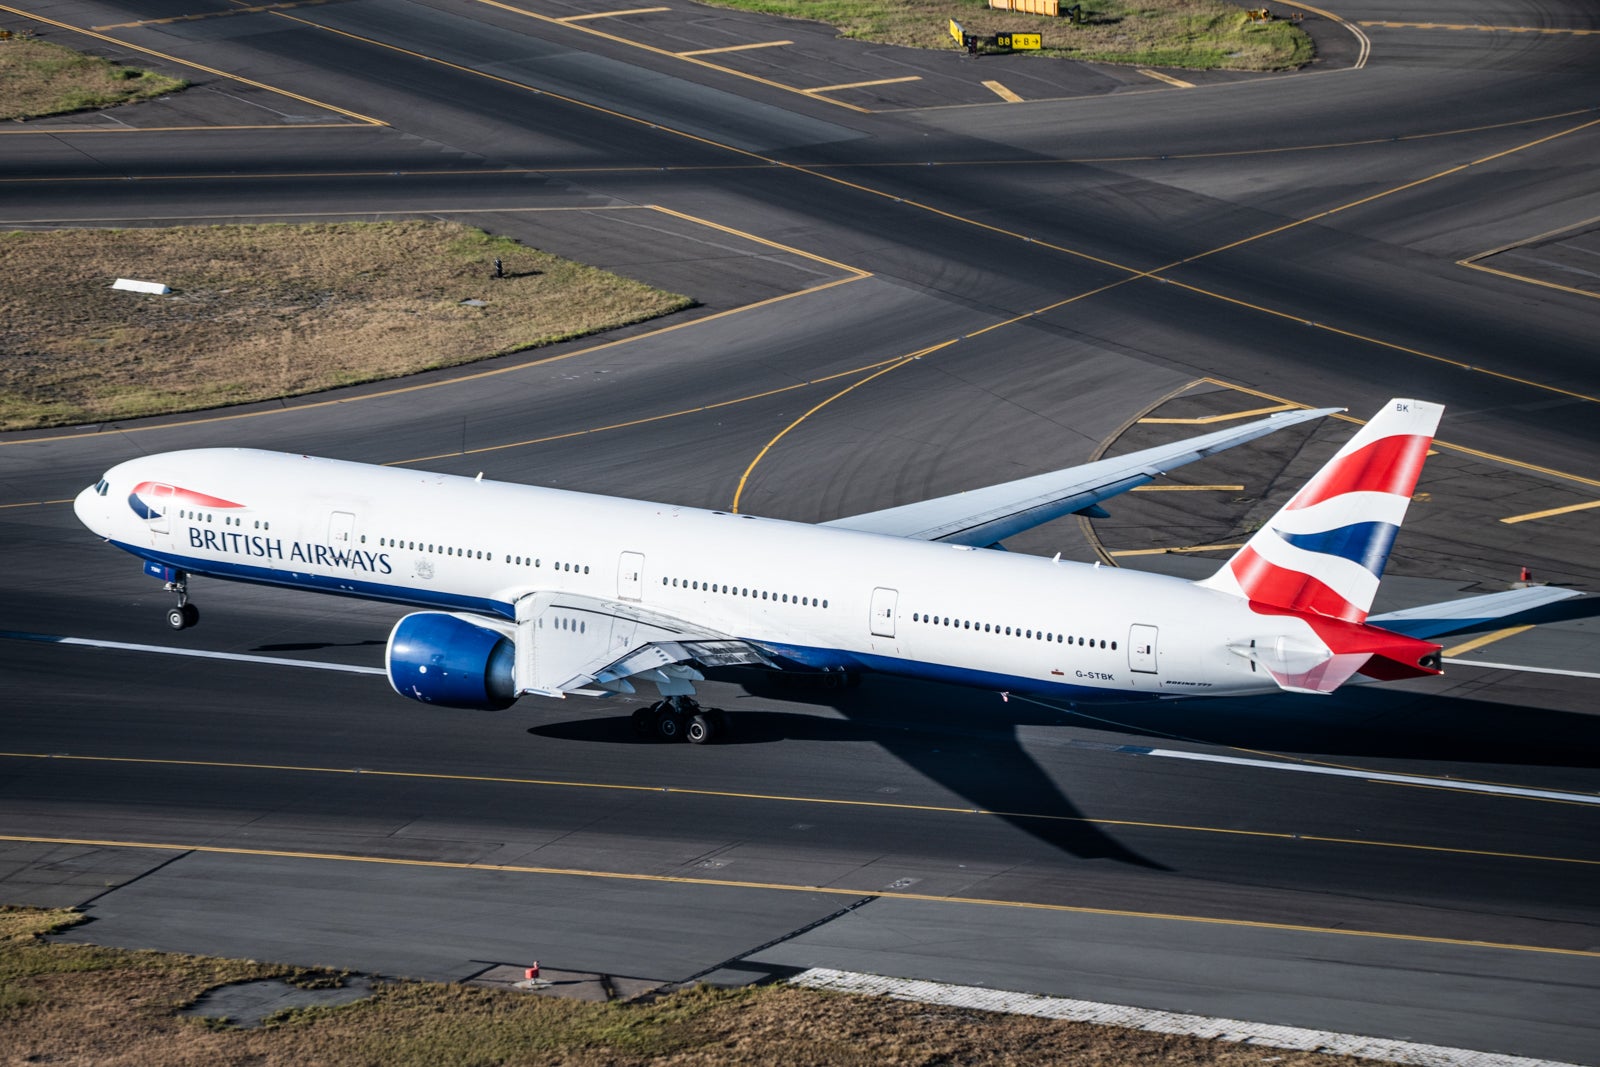 British-Airways-777-300ER-at-Sydney-Airport-SYD